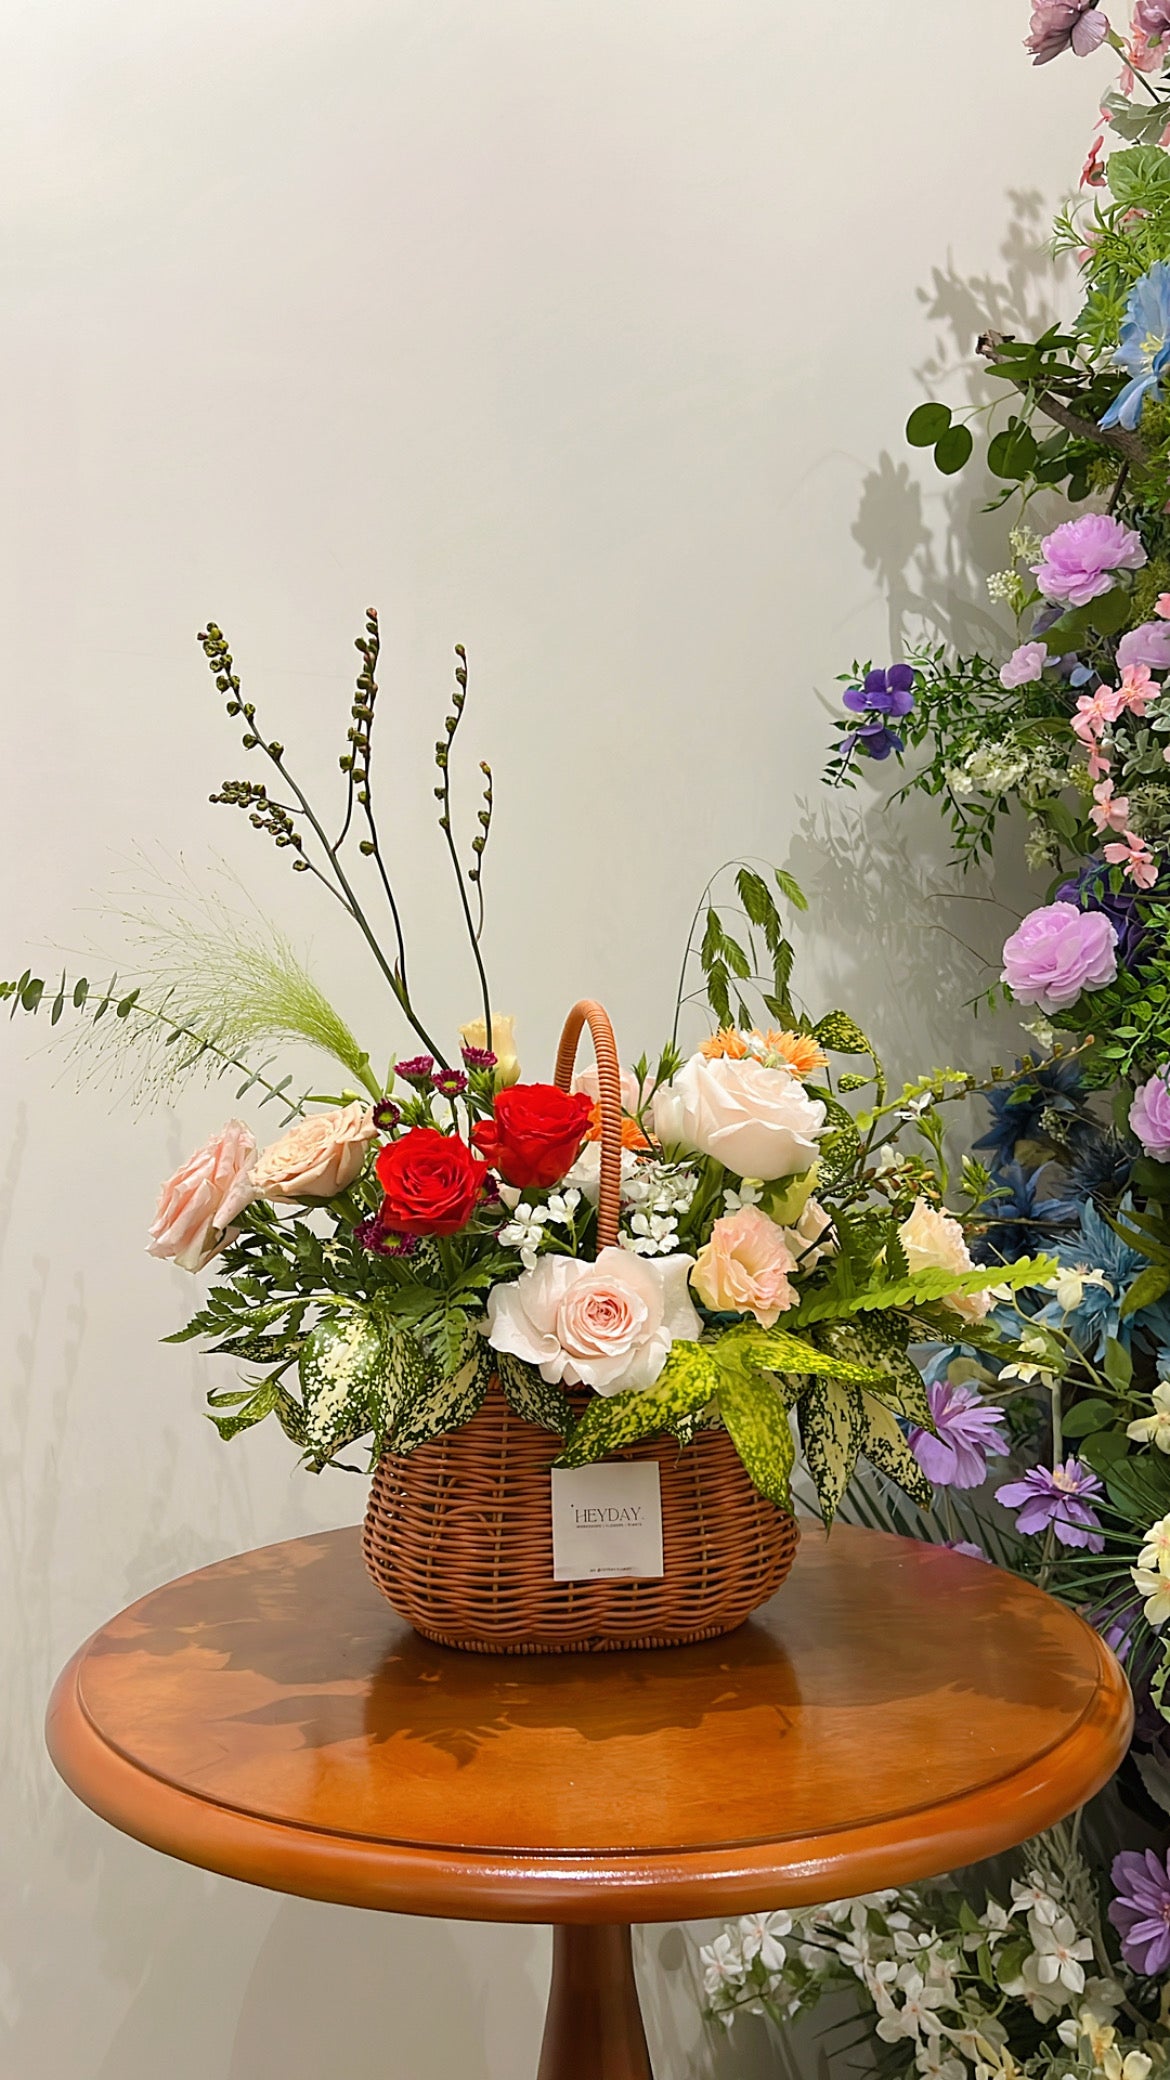 自然花籃工作坊 | Flower Basket